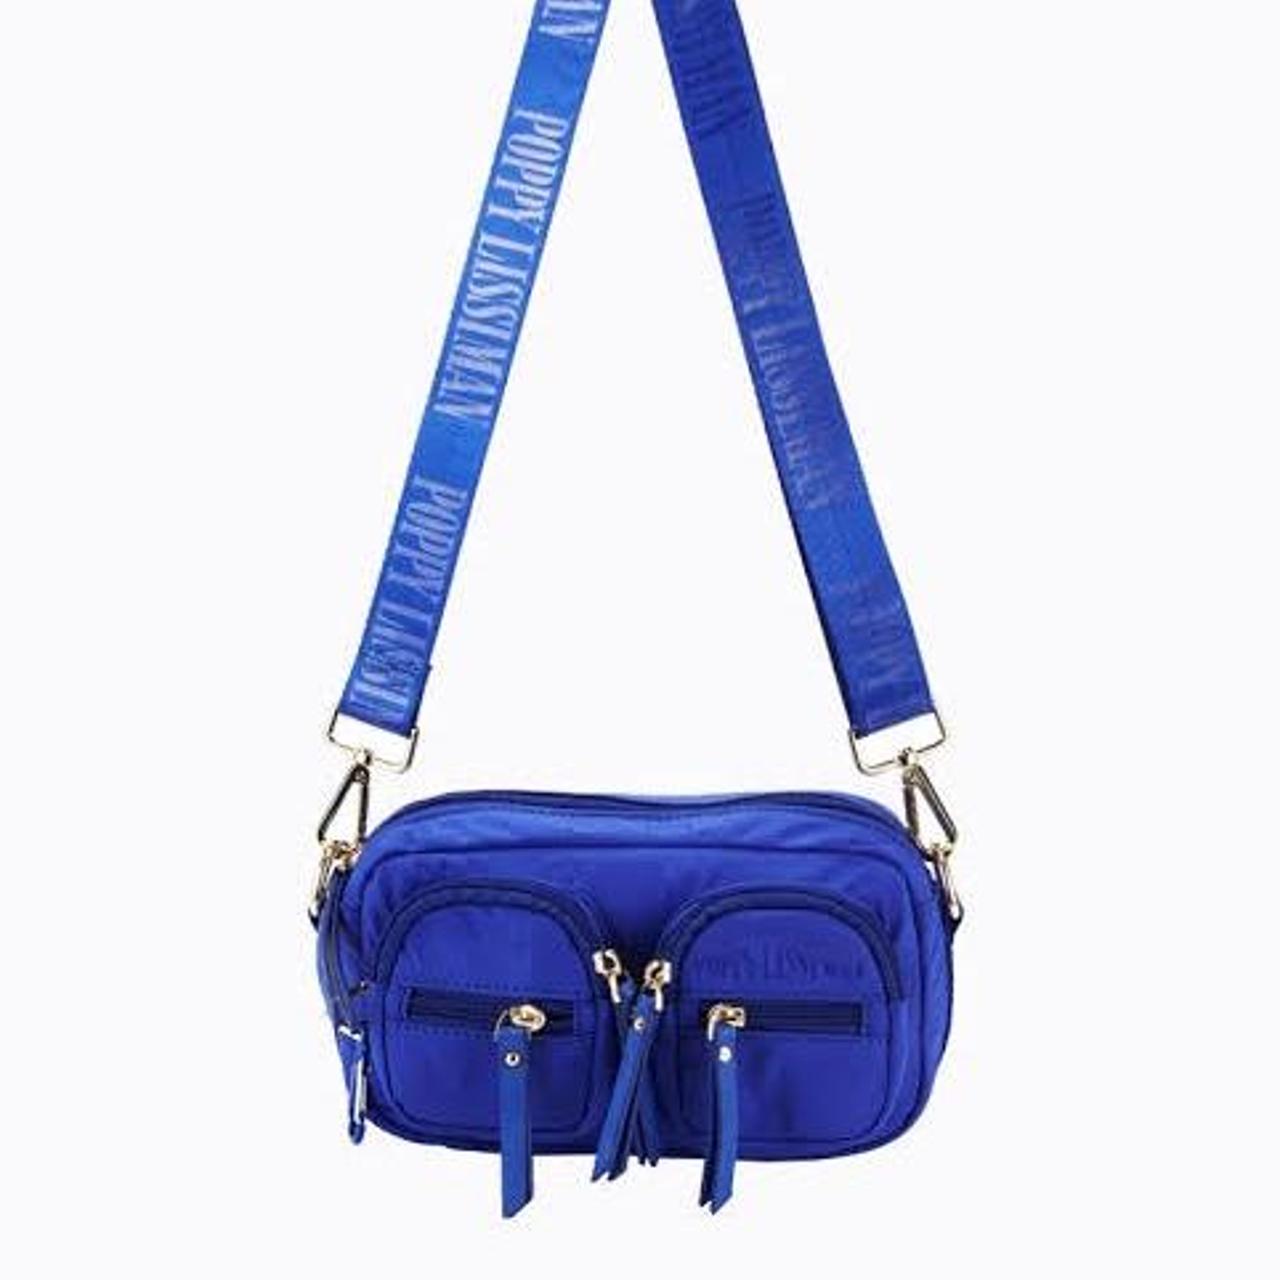 selling blue poppy lissiman bag - bobby bag,... - Depop